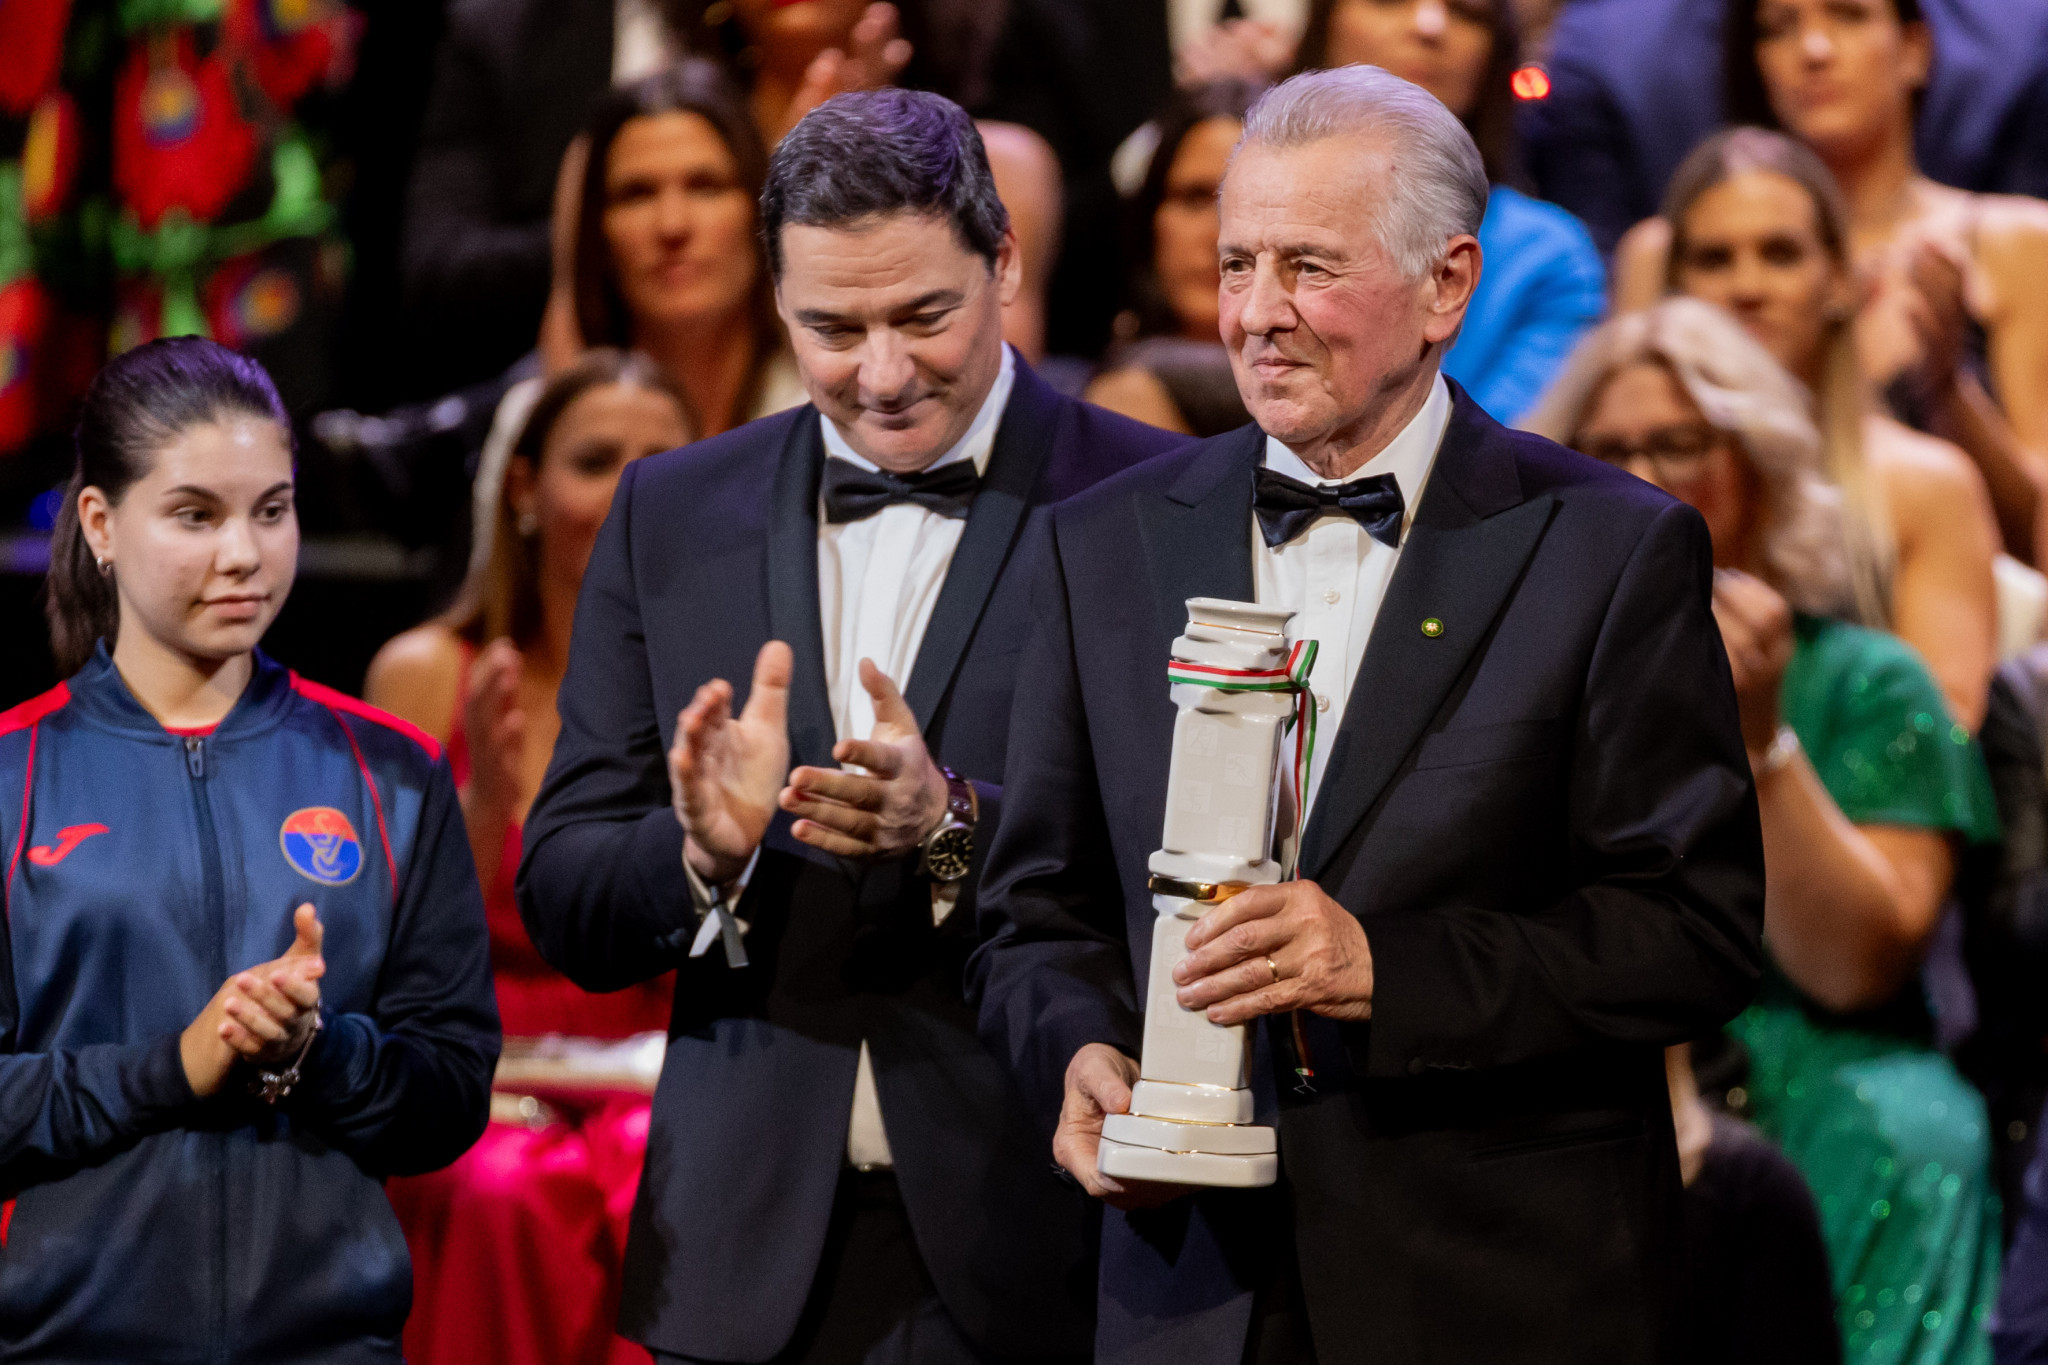 Hungary's Pál Schmitt receives Lifetime Achievement Award